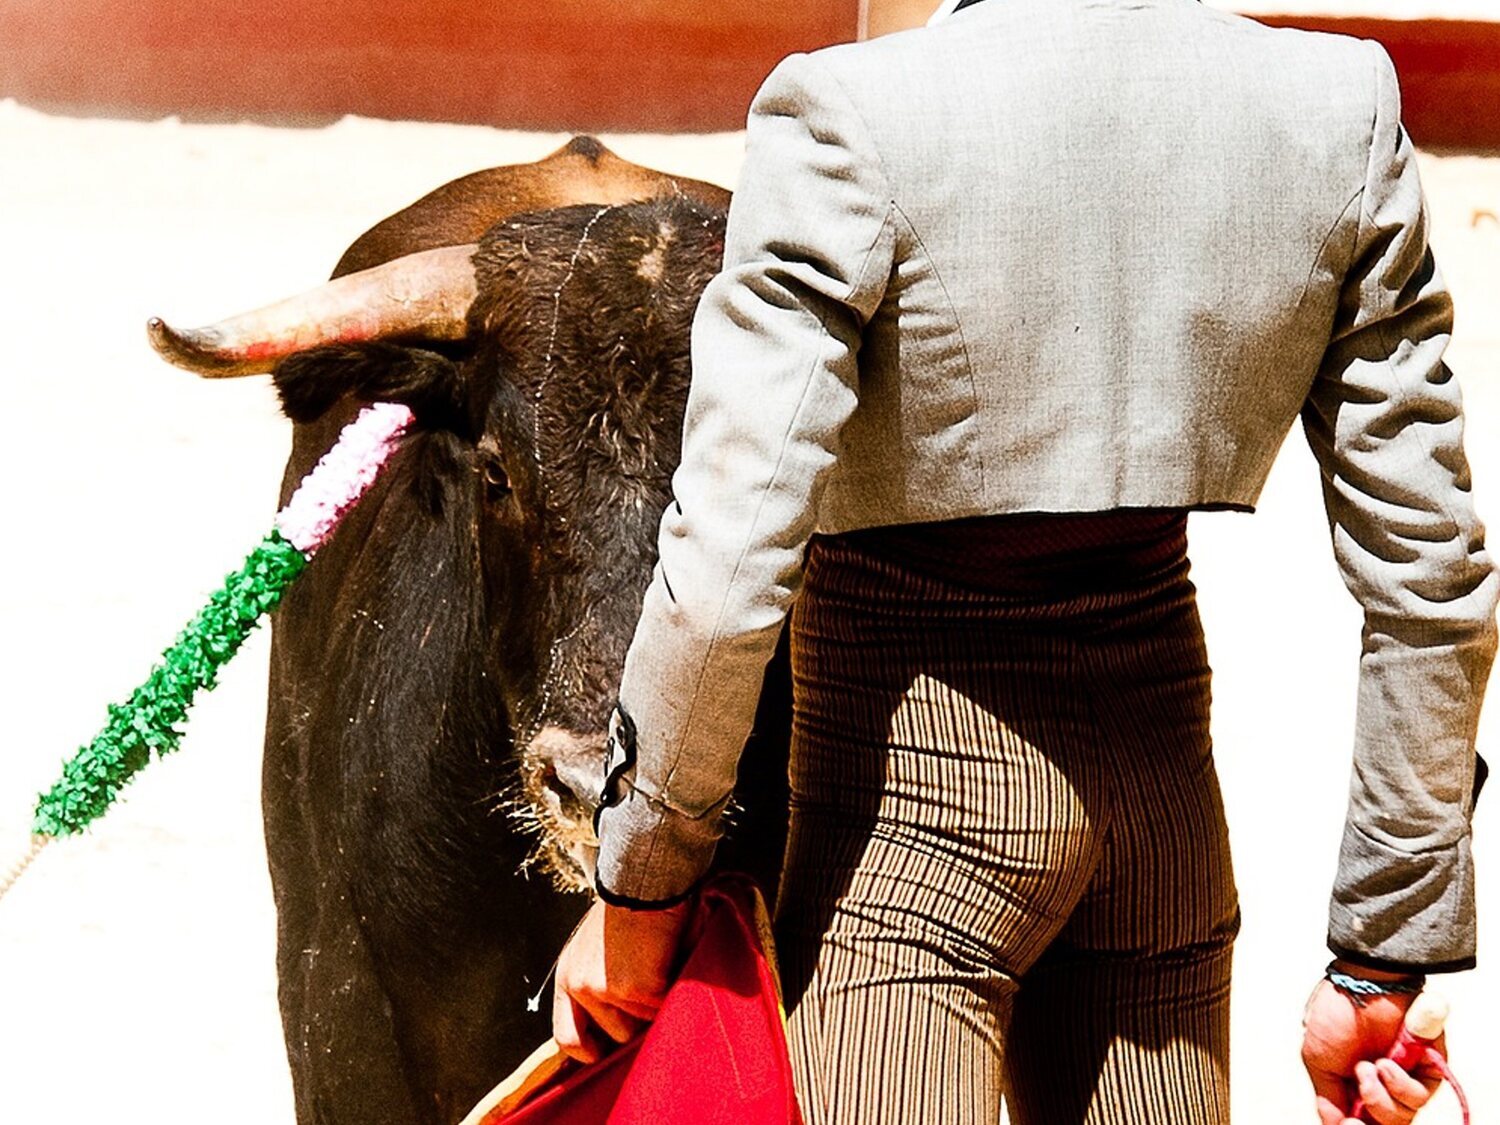 Un recortador sufre una brutal cornada de 10 centímetros en la plaza de toros de Pamplona